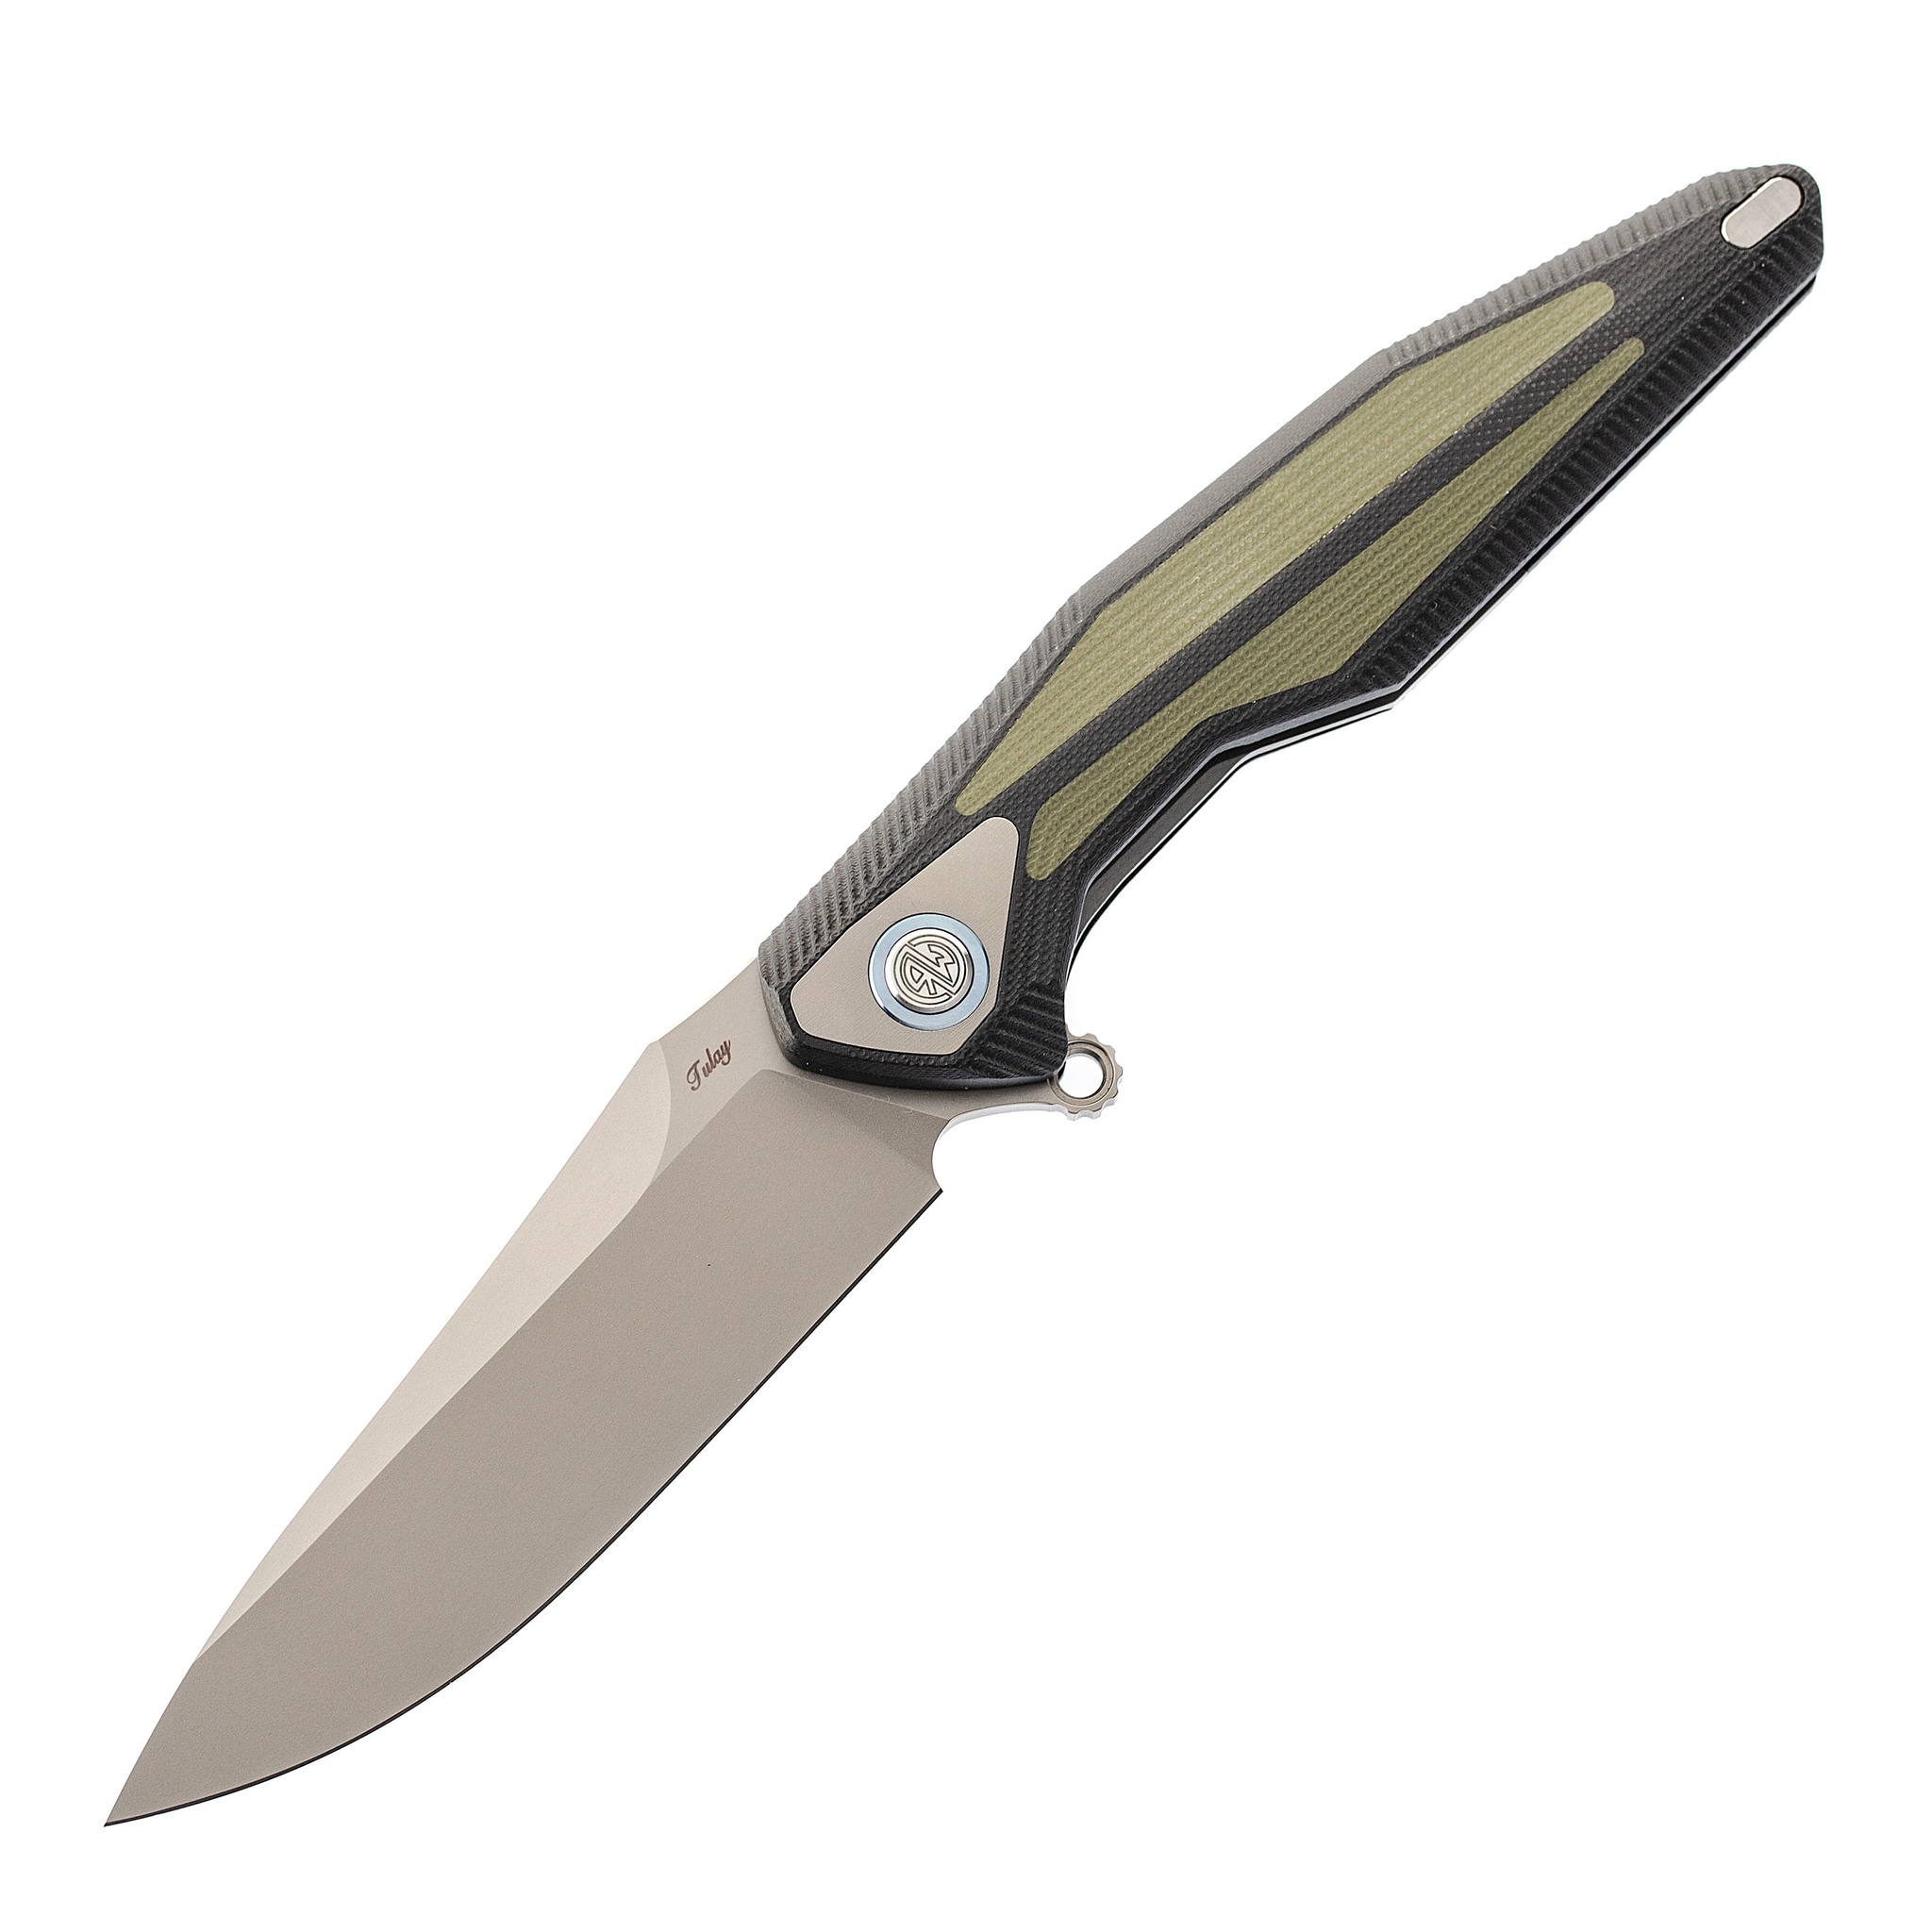 Нож складной Tulay Rikeknife, сталь 154CM, Green G10